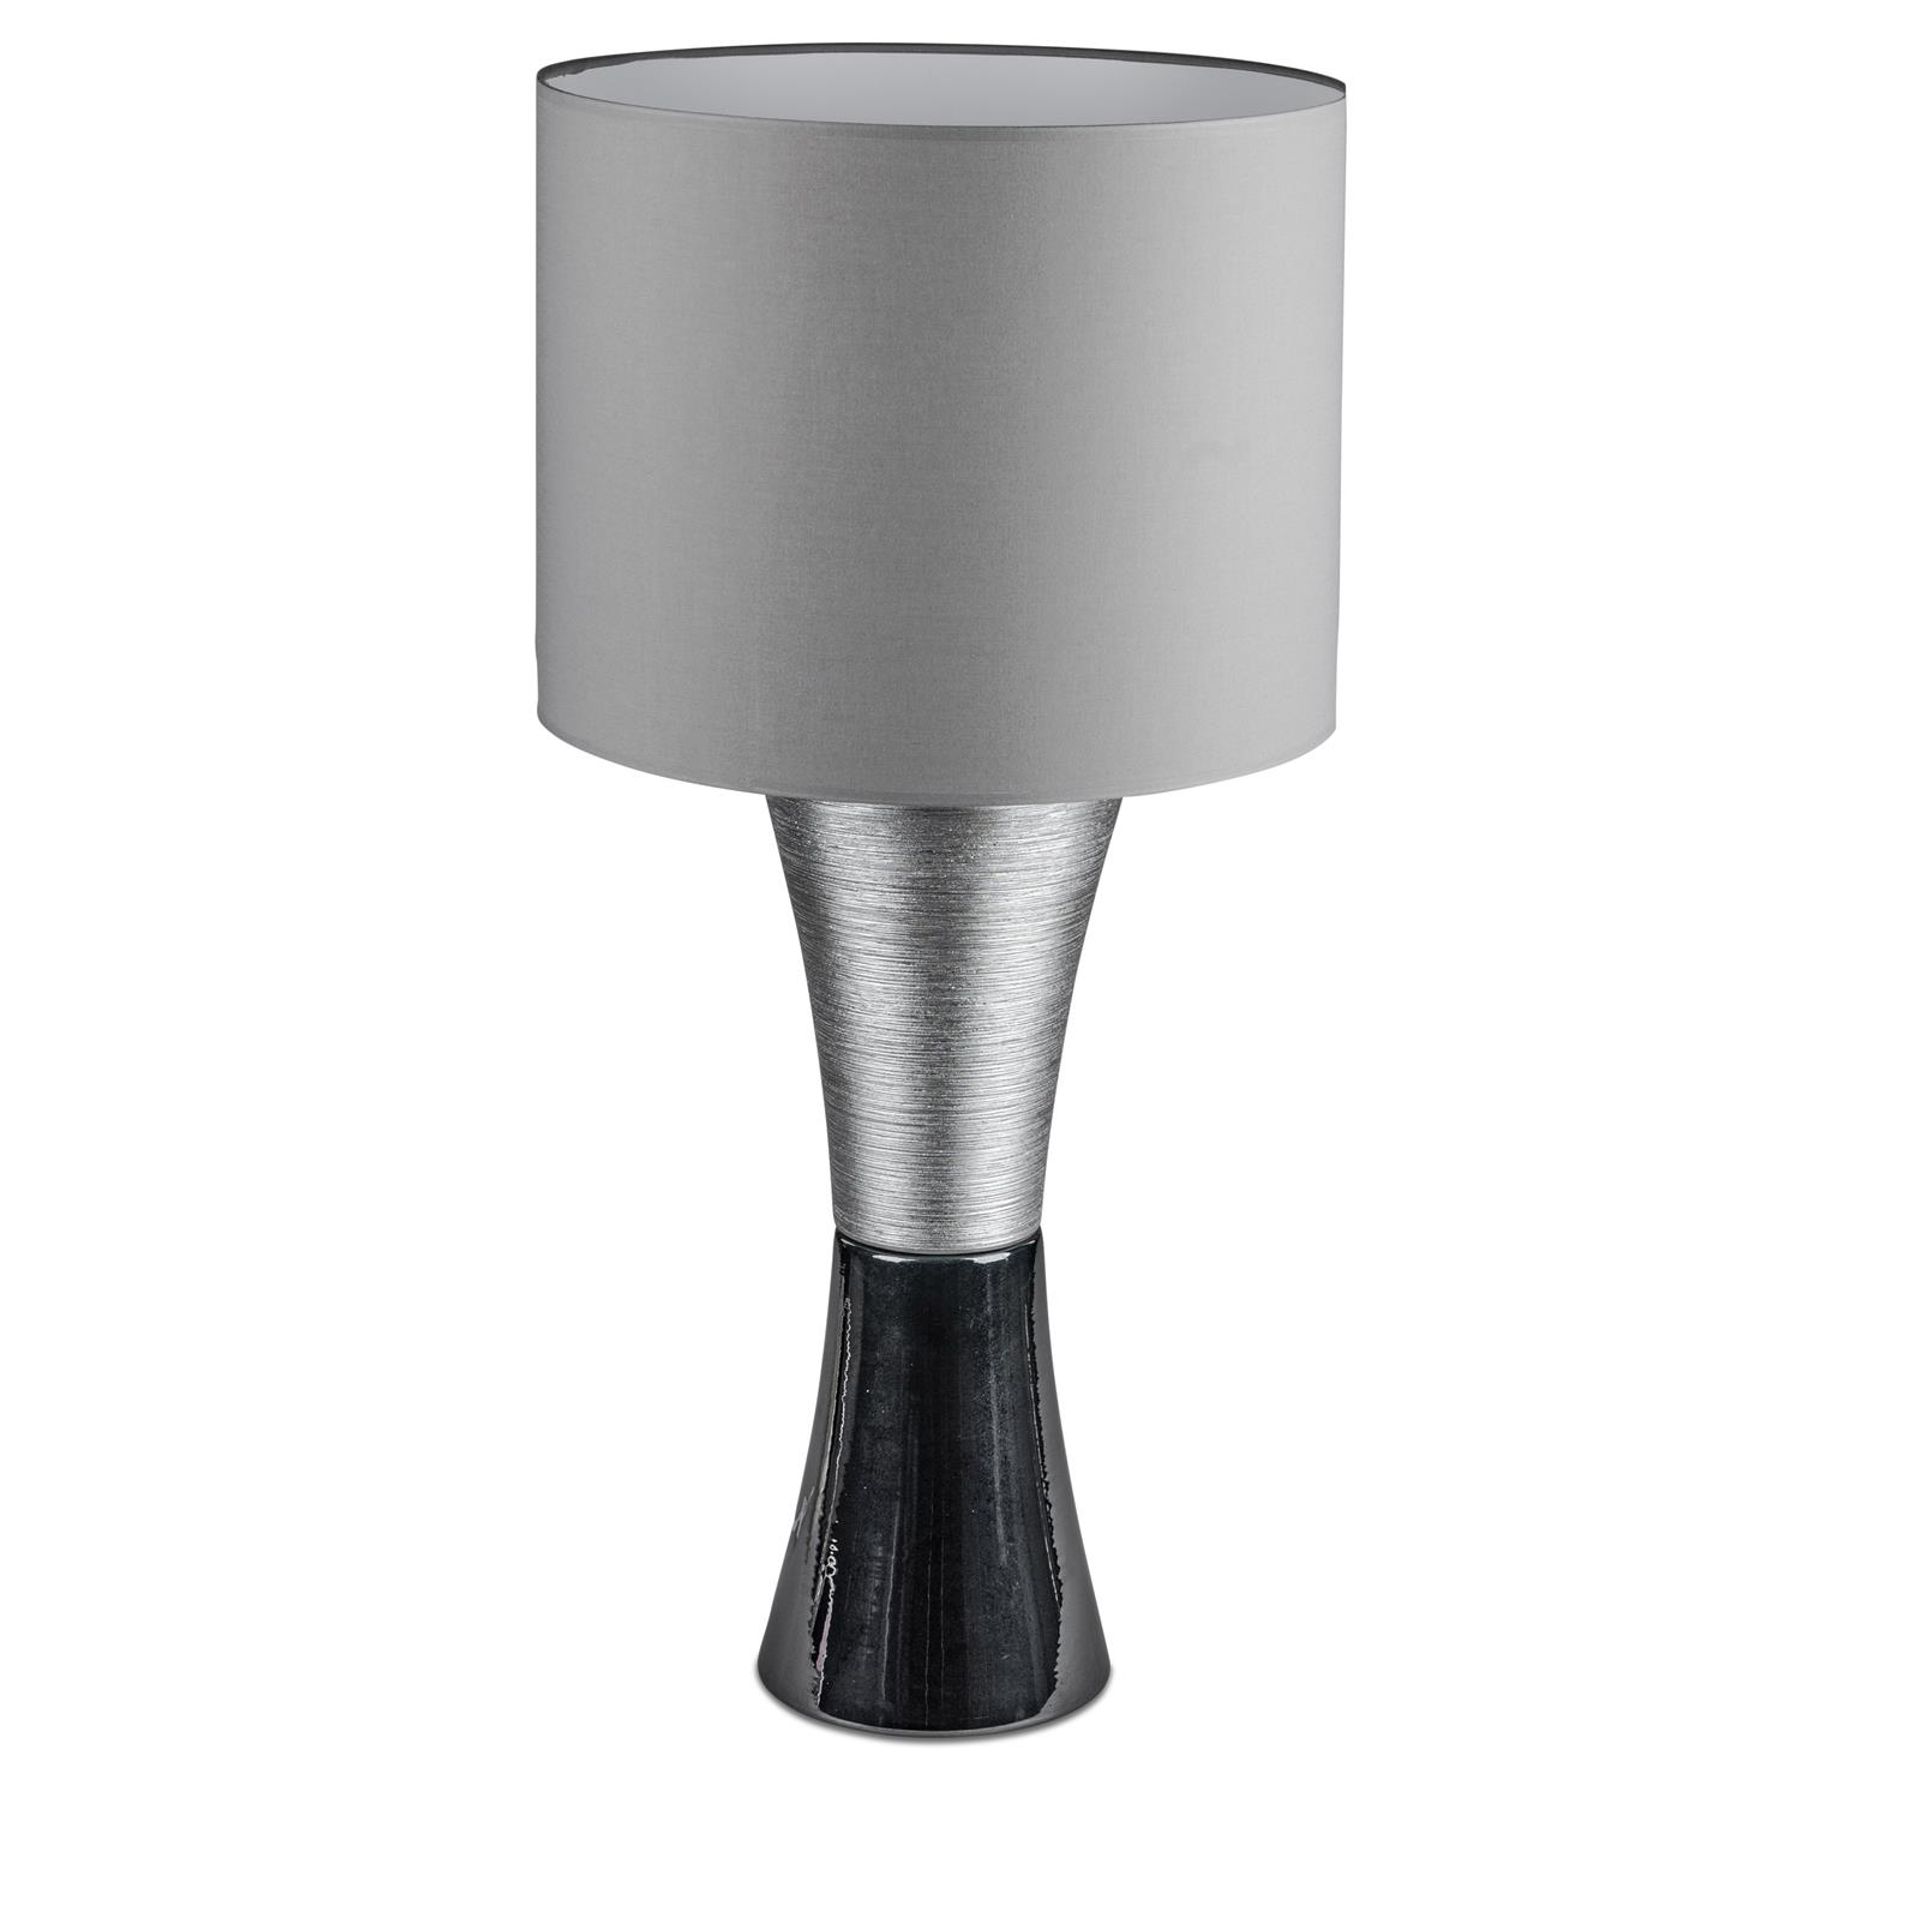 Stilvoller Kontrast: Komplette Lampe 80 cm in Schwarz-Silber mit Lampenfuß aus matt + glänzender Keramik und silbernem Stoffschirm